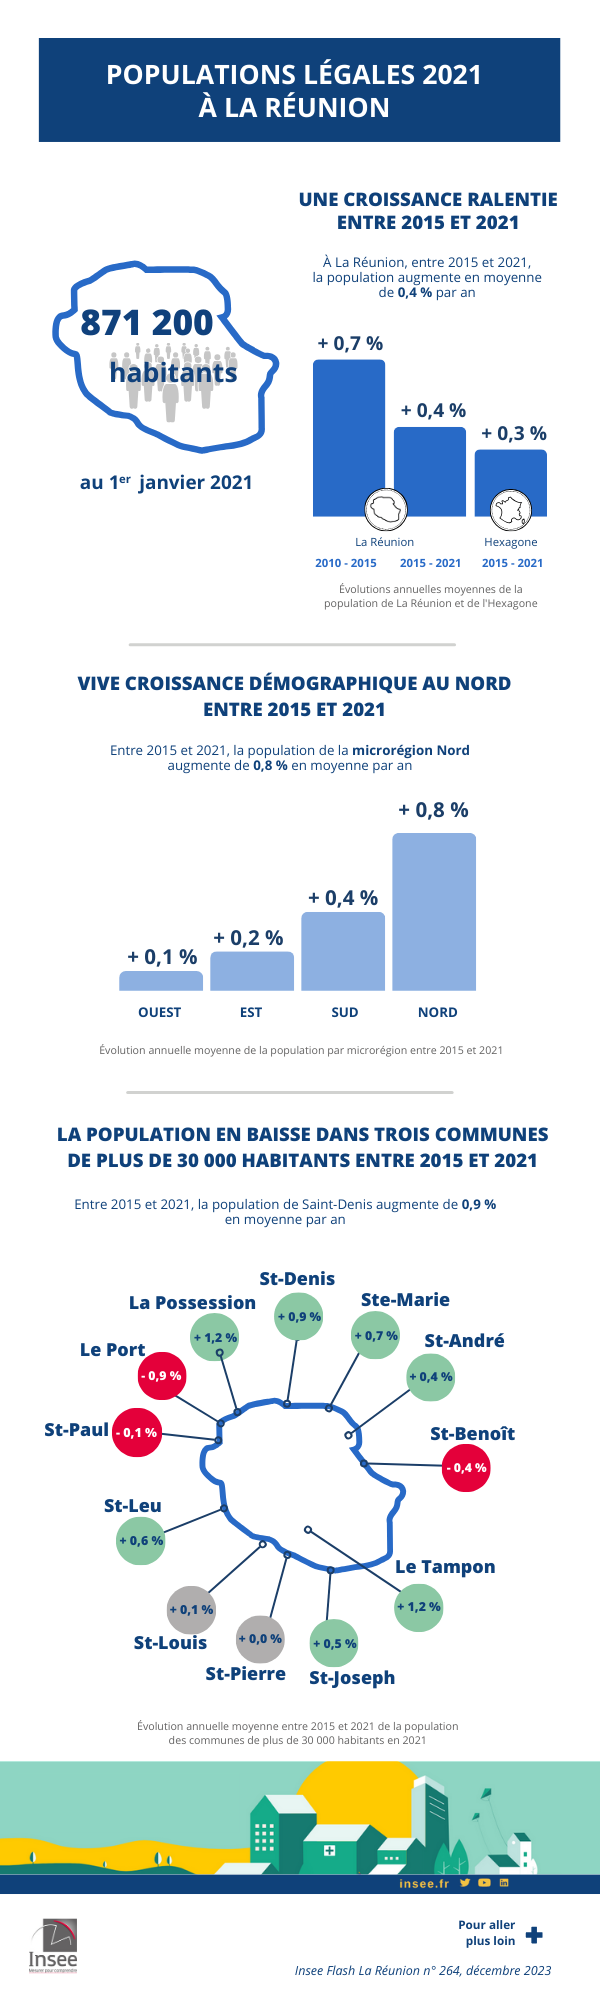 Infographie sur les populations légales de La Réunion en 2021